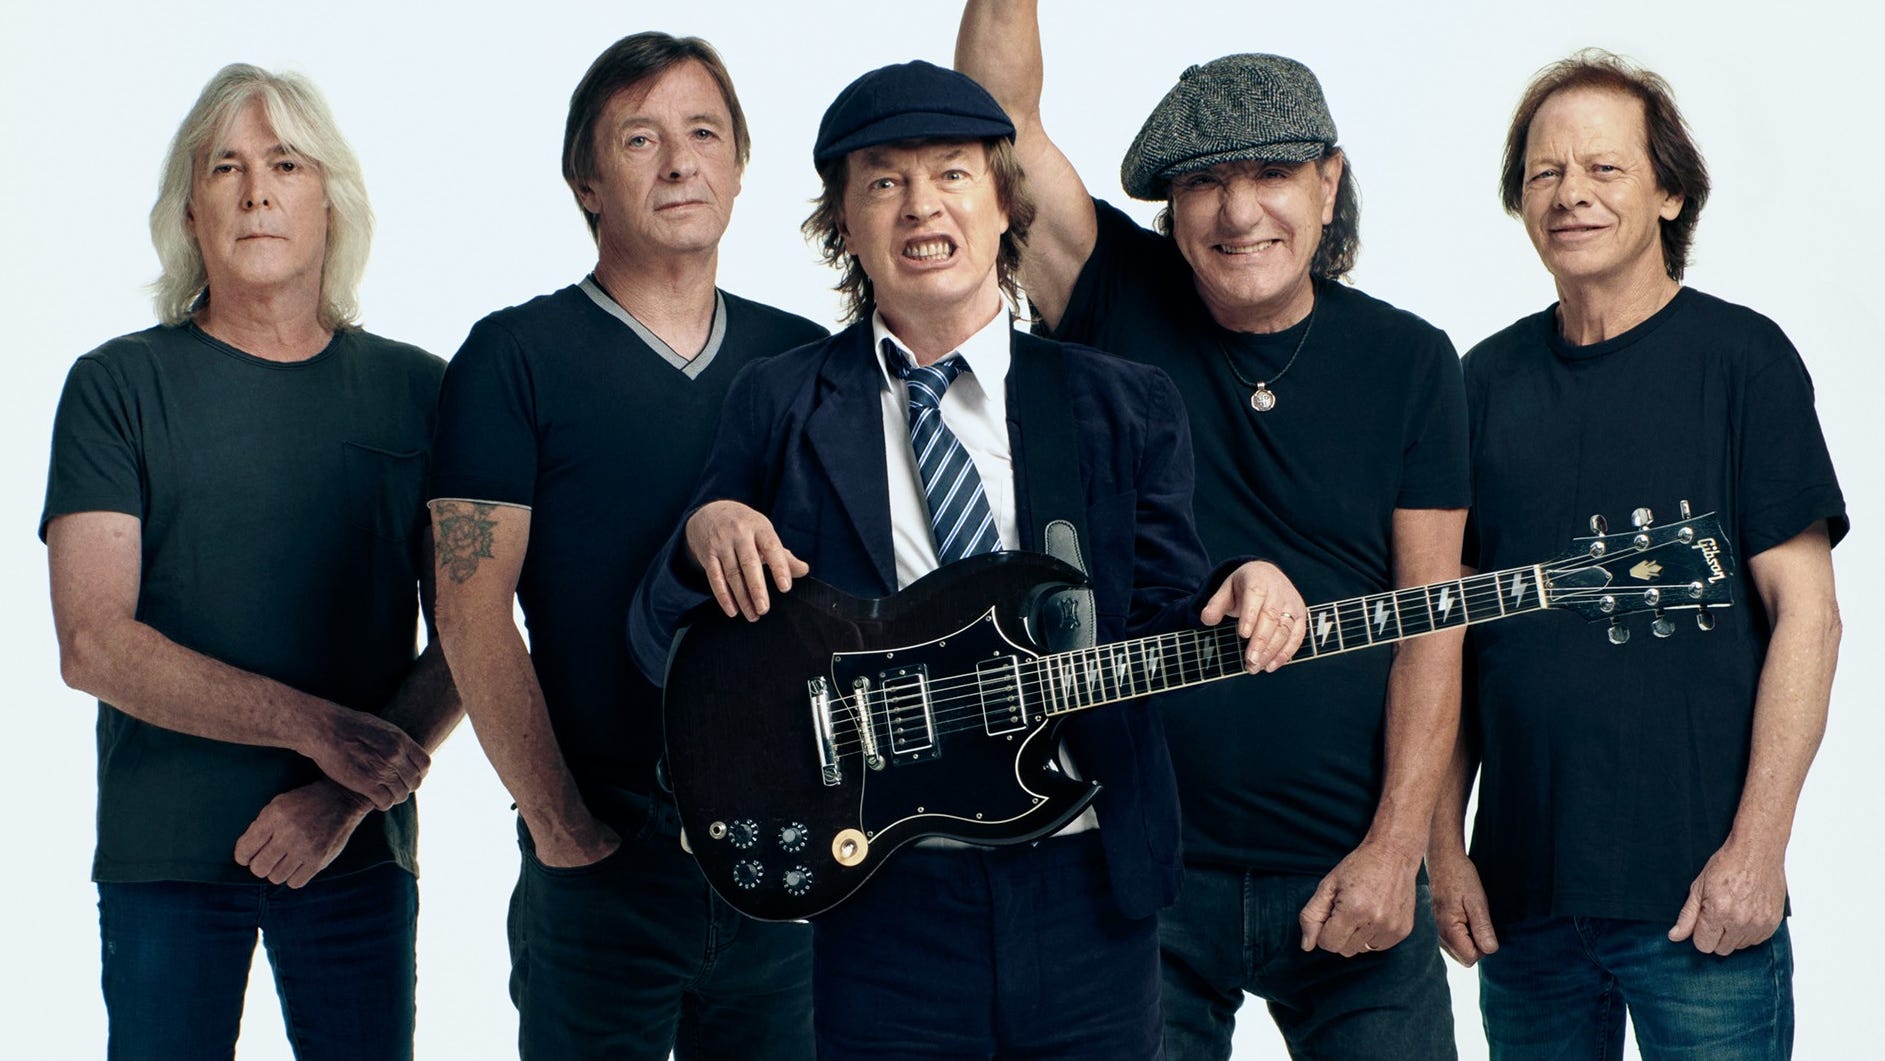 Vilje jeg behøver Vuggeviser AC/DC interview: Angus Young, Brian Johnson talk 'Shot in the Dark'